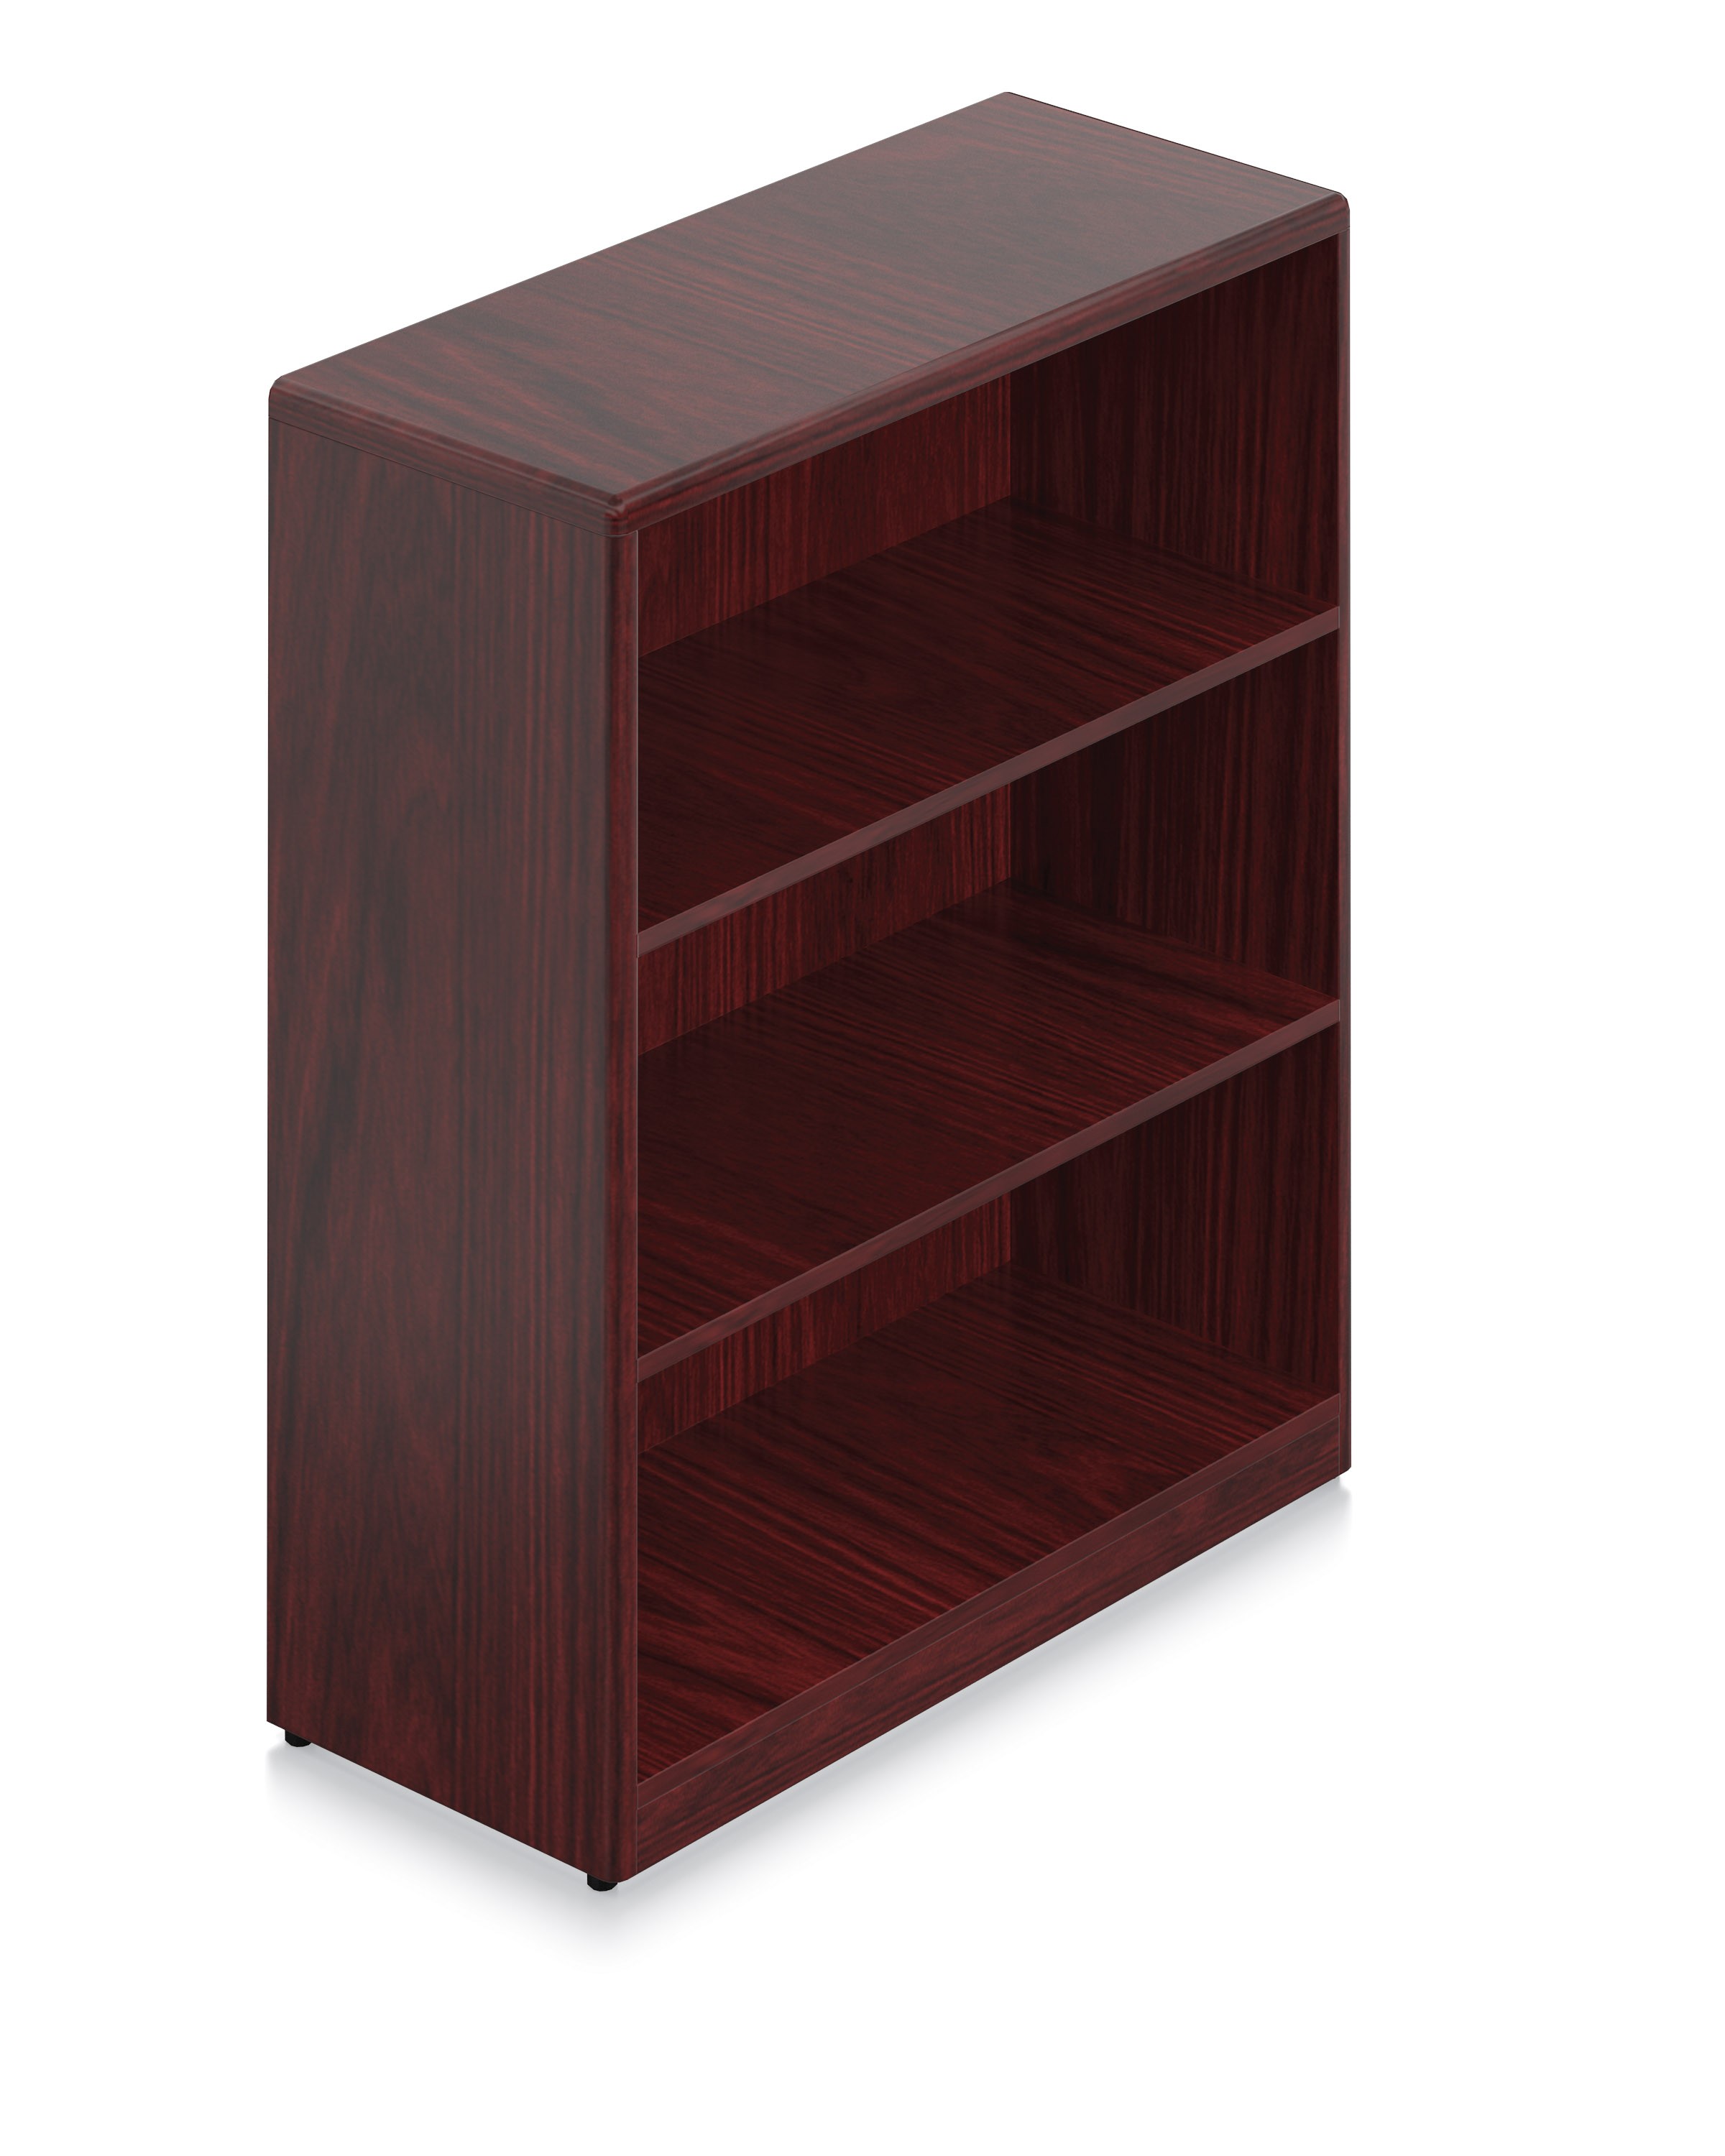 Margate Wood Veneer 42" 3 Shelf Bookcase 